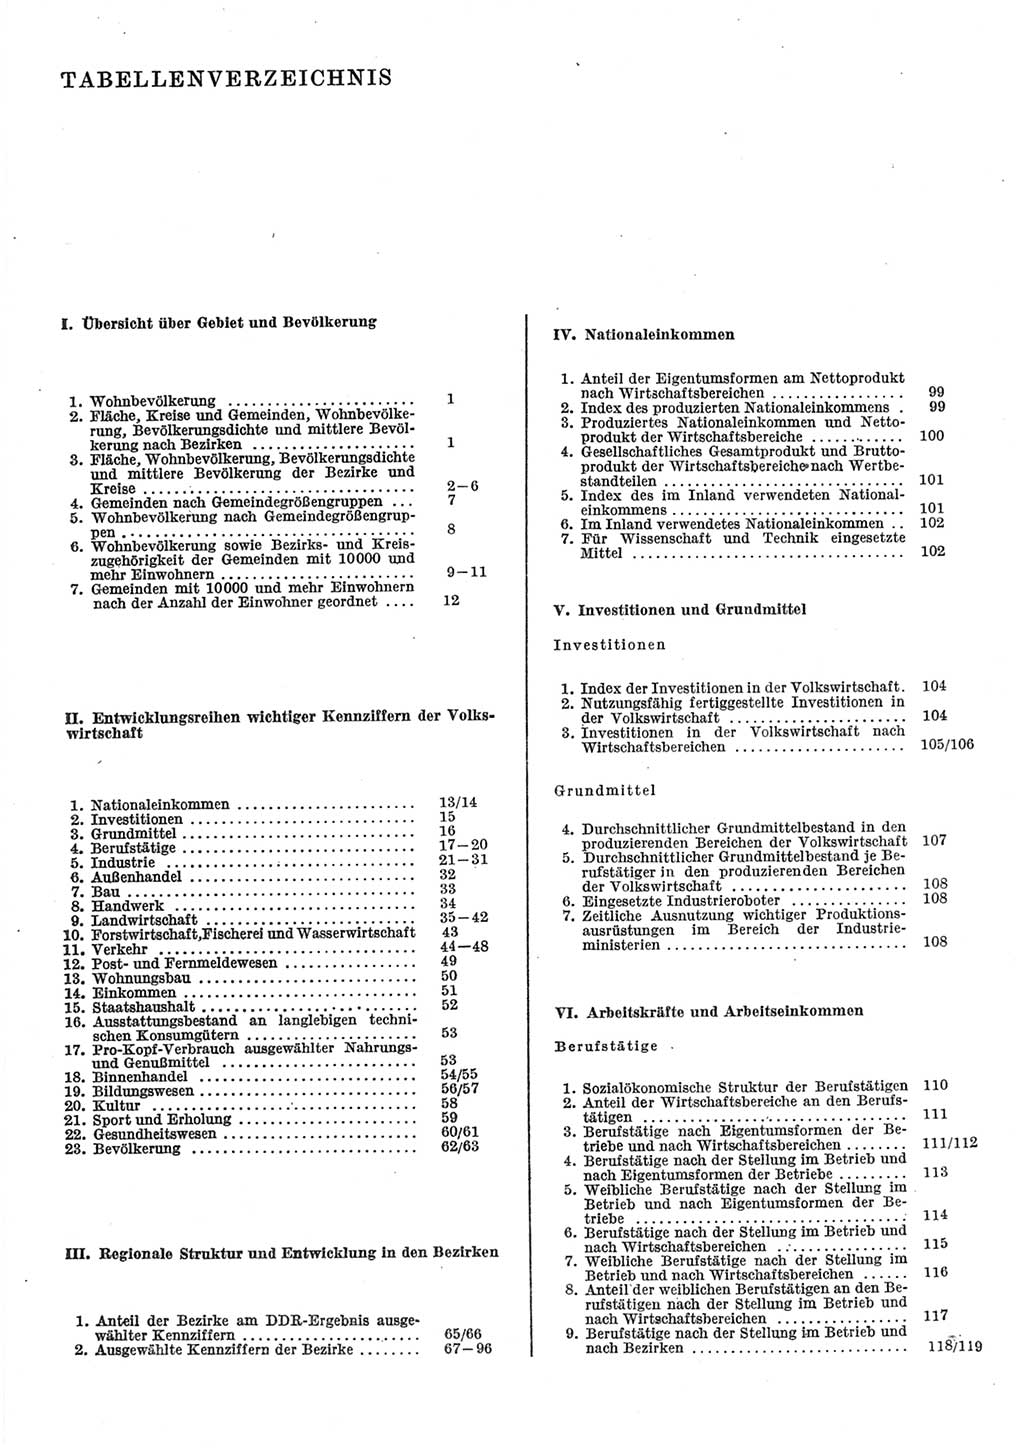 Statistisches Jahrbuch der Deutschen Demokratischen Republik (DDR) 1985, Seite 7 (Stat. Jb. DDR 1985, S. 7)